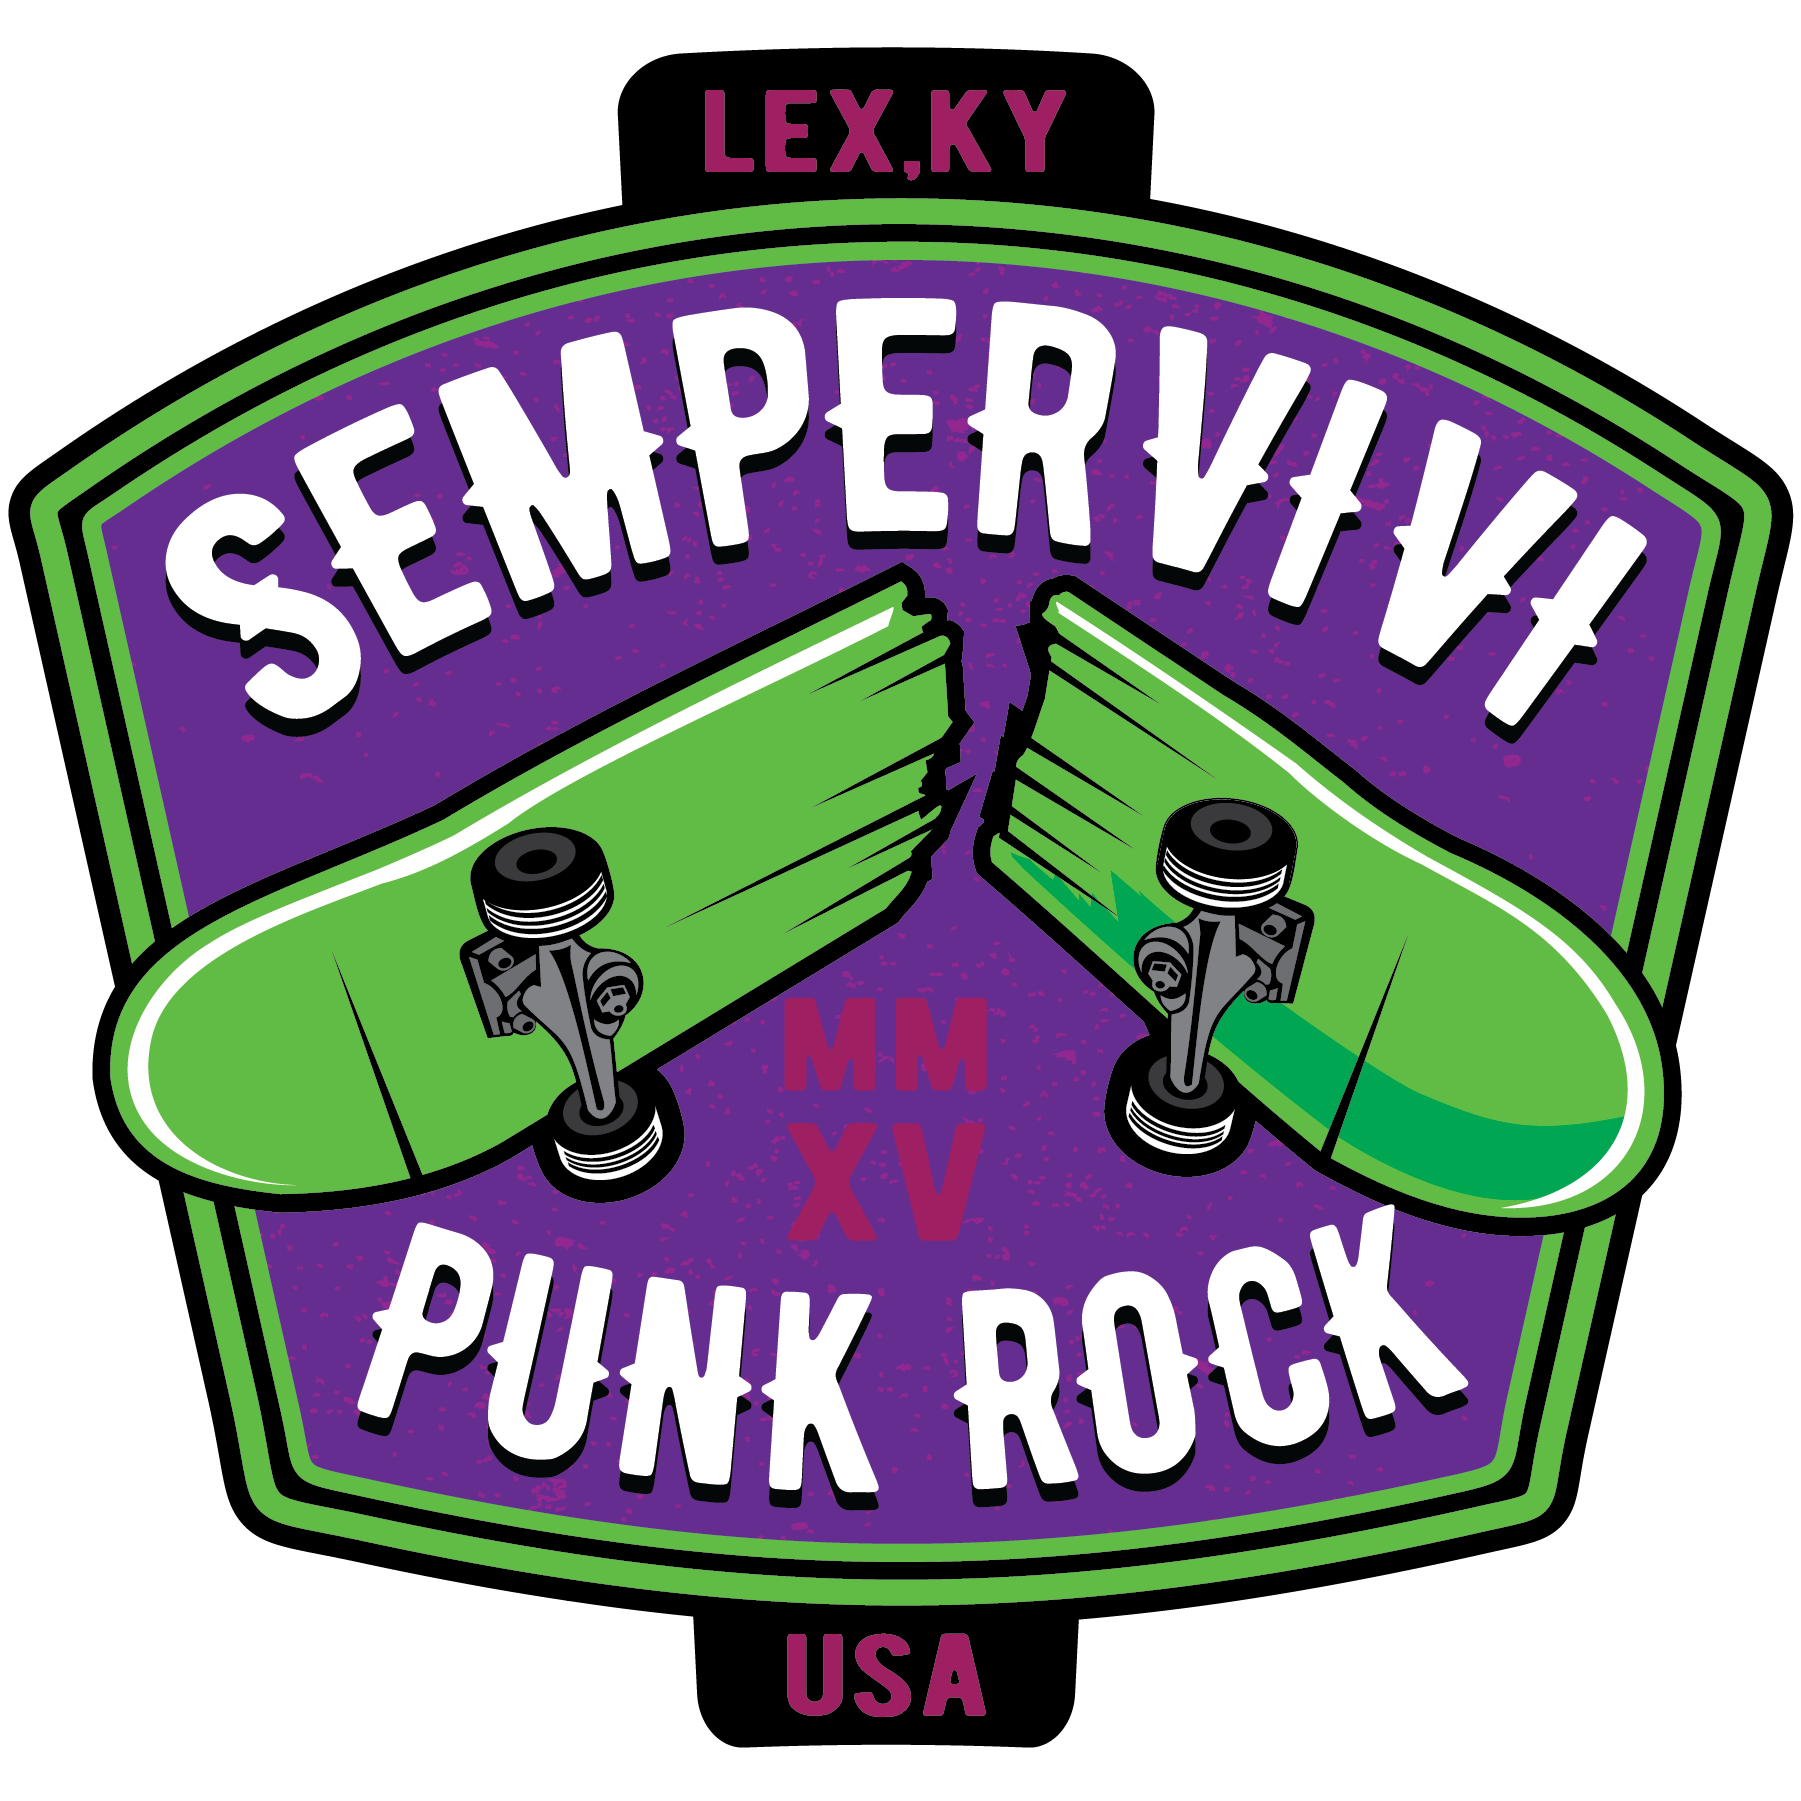 Sempervivi "Skateboard" Sticker (Purple)